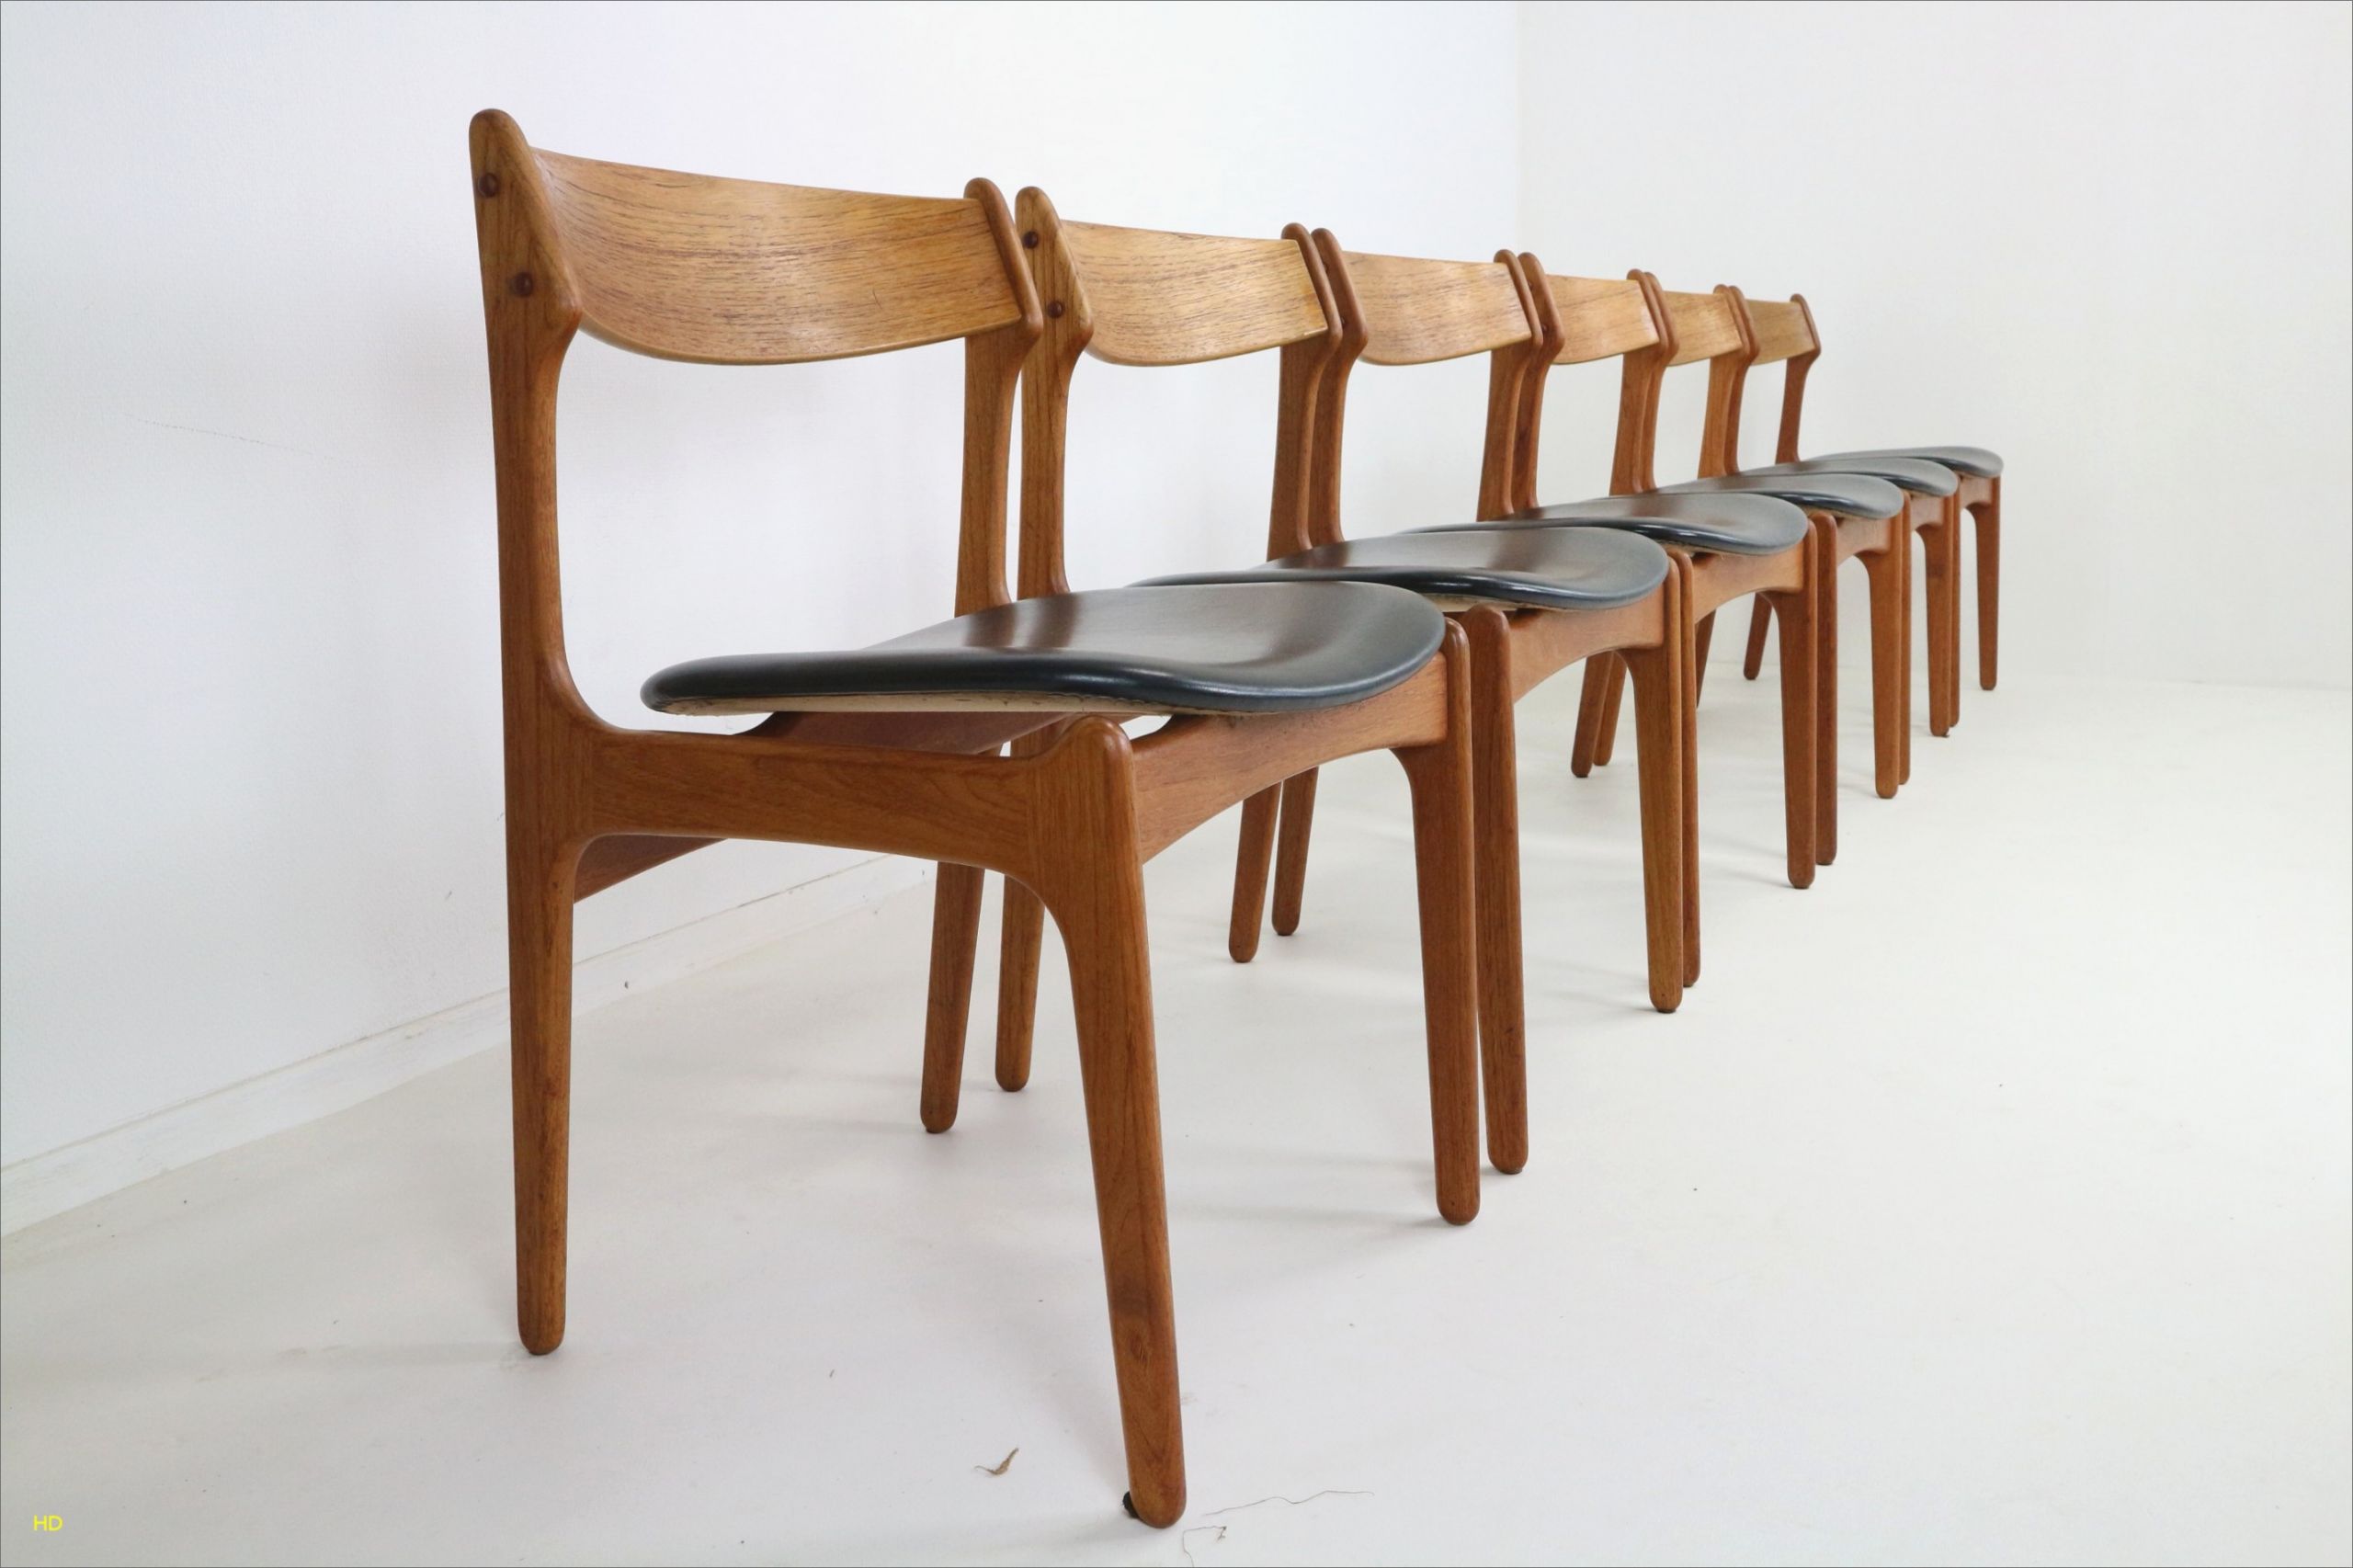 chaise de jardin en bois exotique charmant lesmeubles table en bois lesmeubles of chaise de jardin en bois exotique